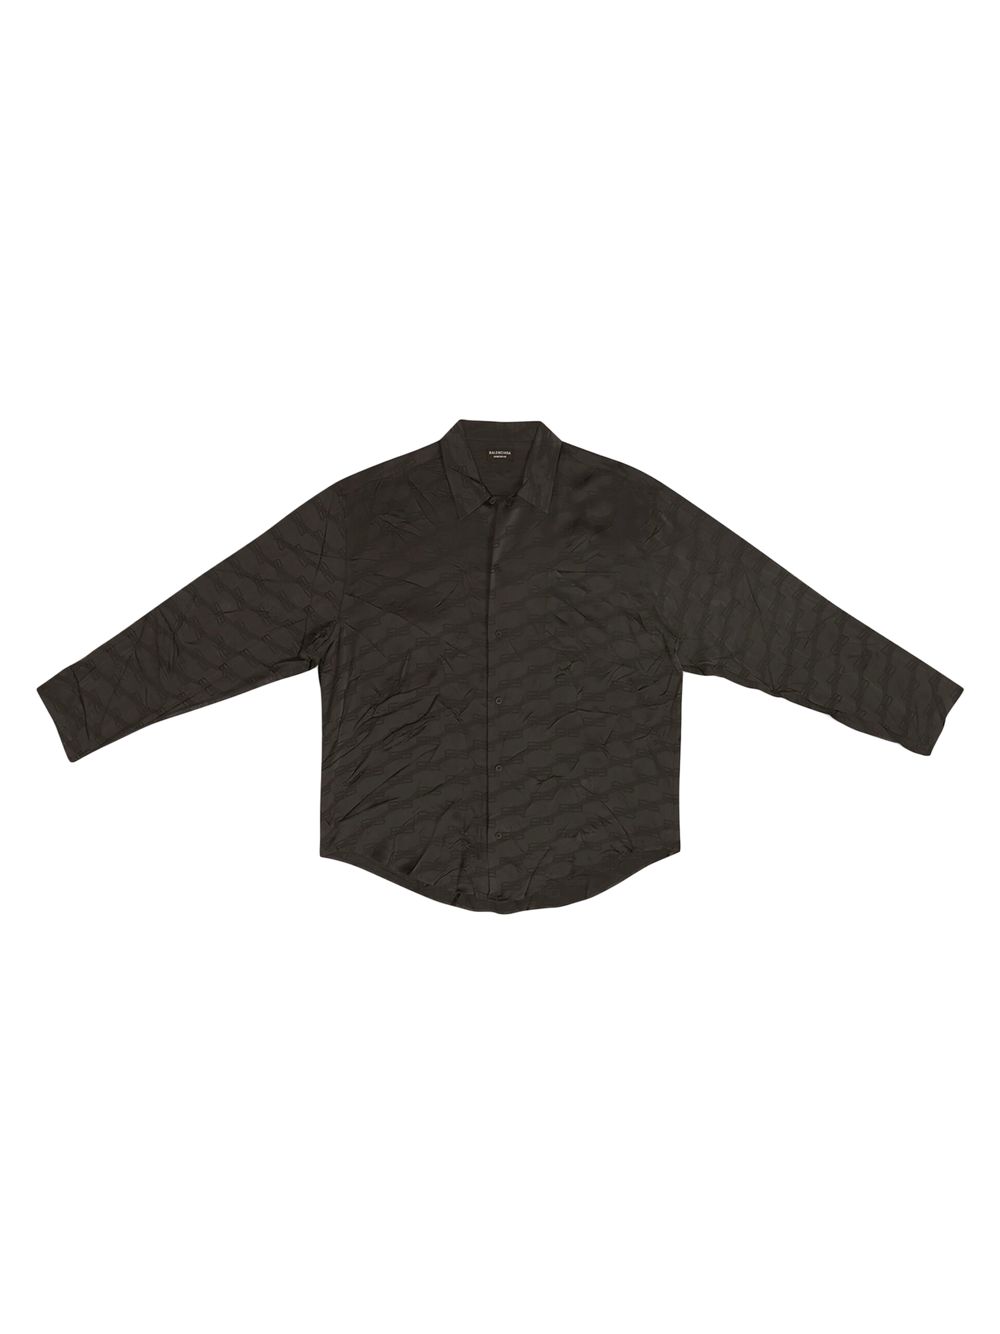 Миниатюрная рубашка с монограммой Bb Balenciaga, черный